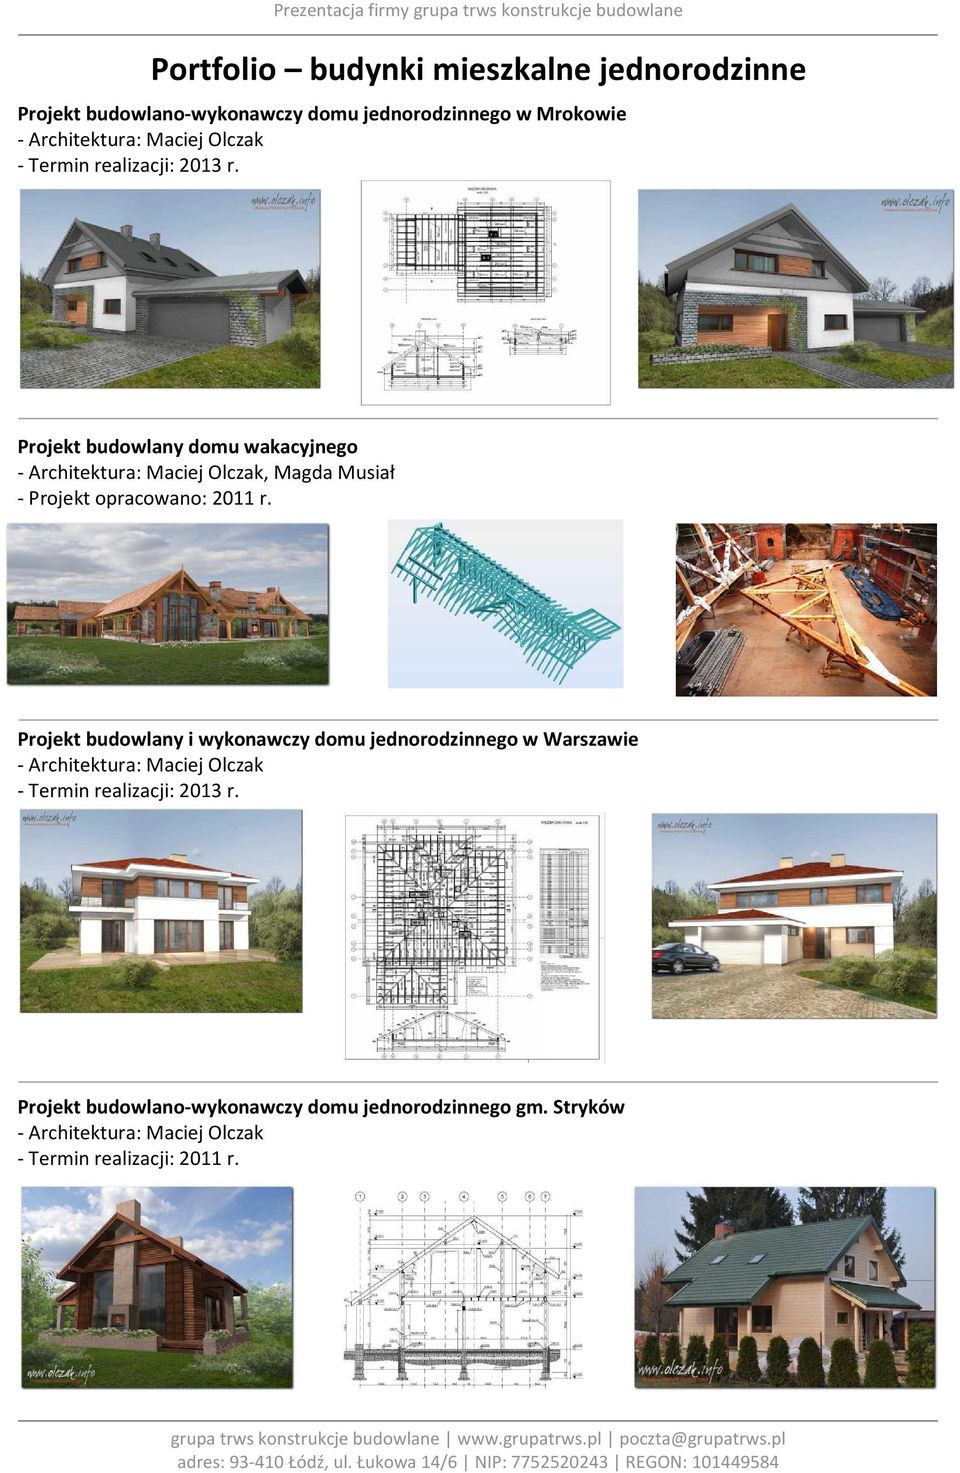 Projekt budowlany domu wakacyjnego - Architektura: Maciej Olczak, Magda Musiał - Projekt opracowano: 2011 r.